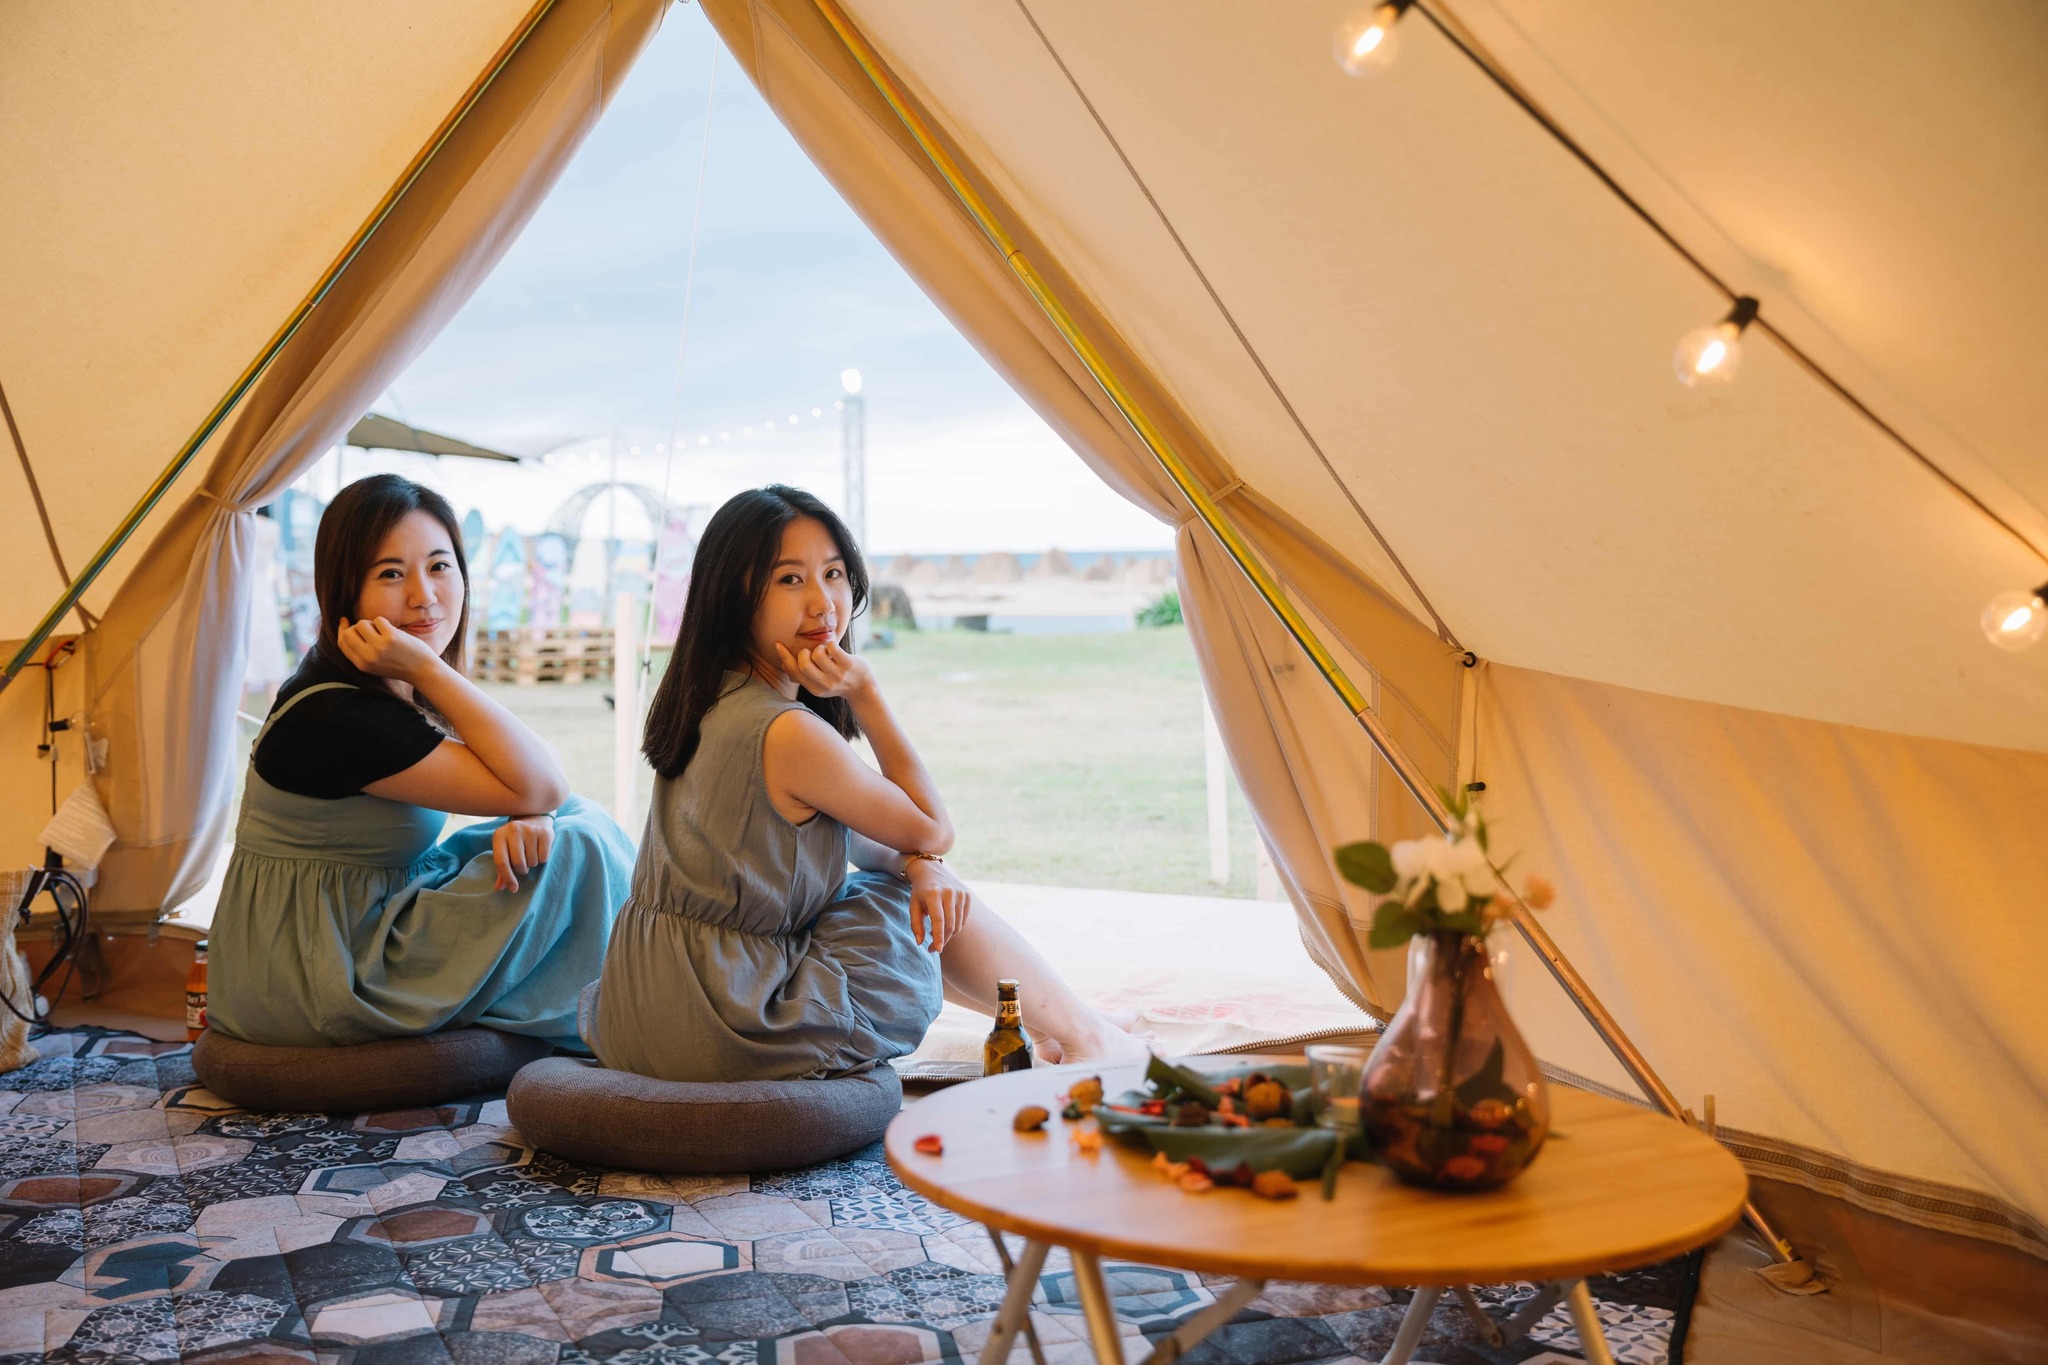 Những túp lều được dựng lên tại lễ hội, thu hút các bạn trẻ đến check in sống ảo. (Ảnh: Lấy từ Facebook “新北旅客”)